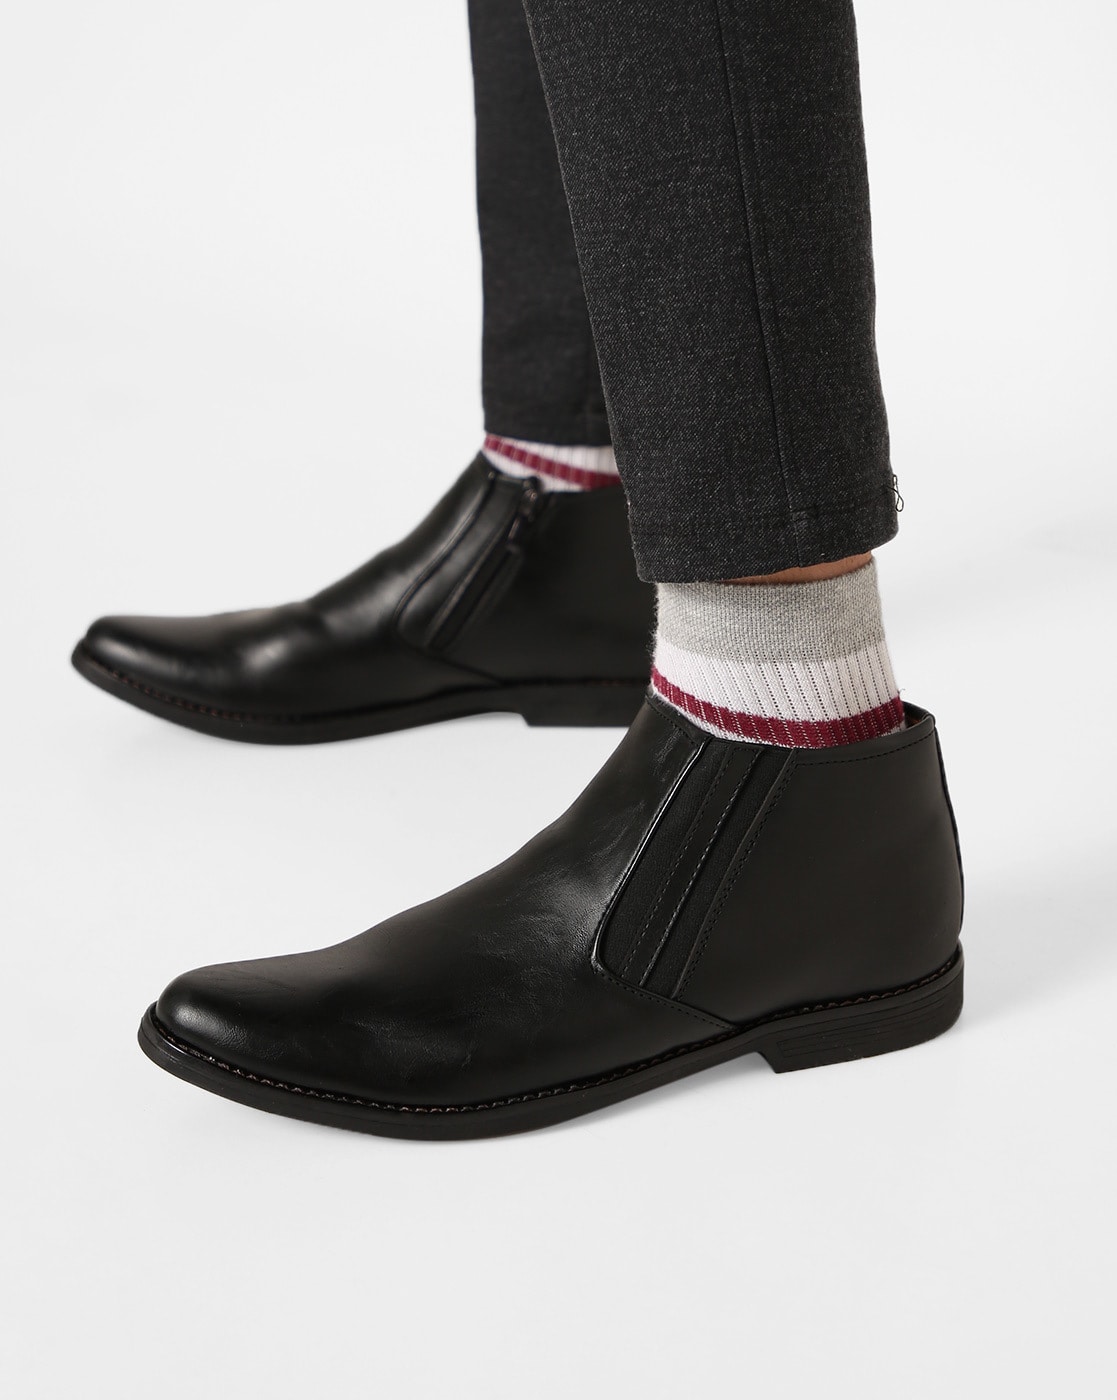 black formal boots for men